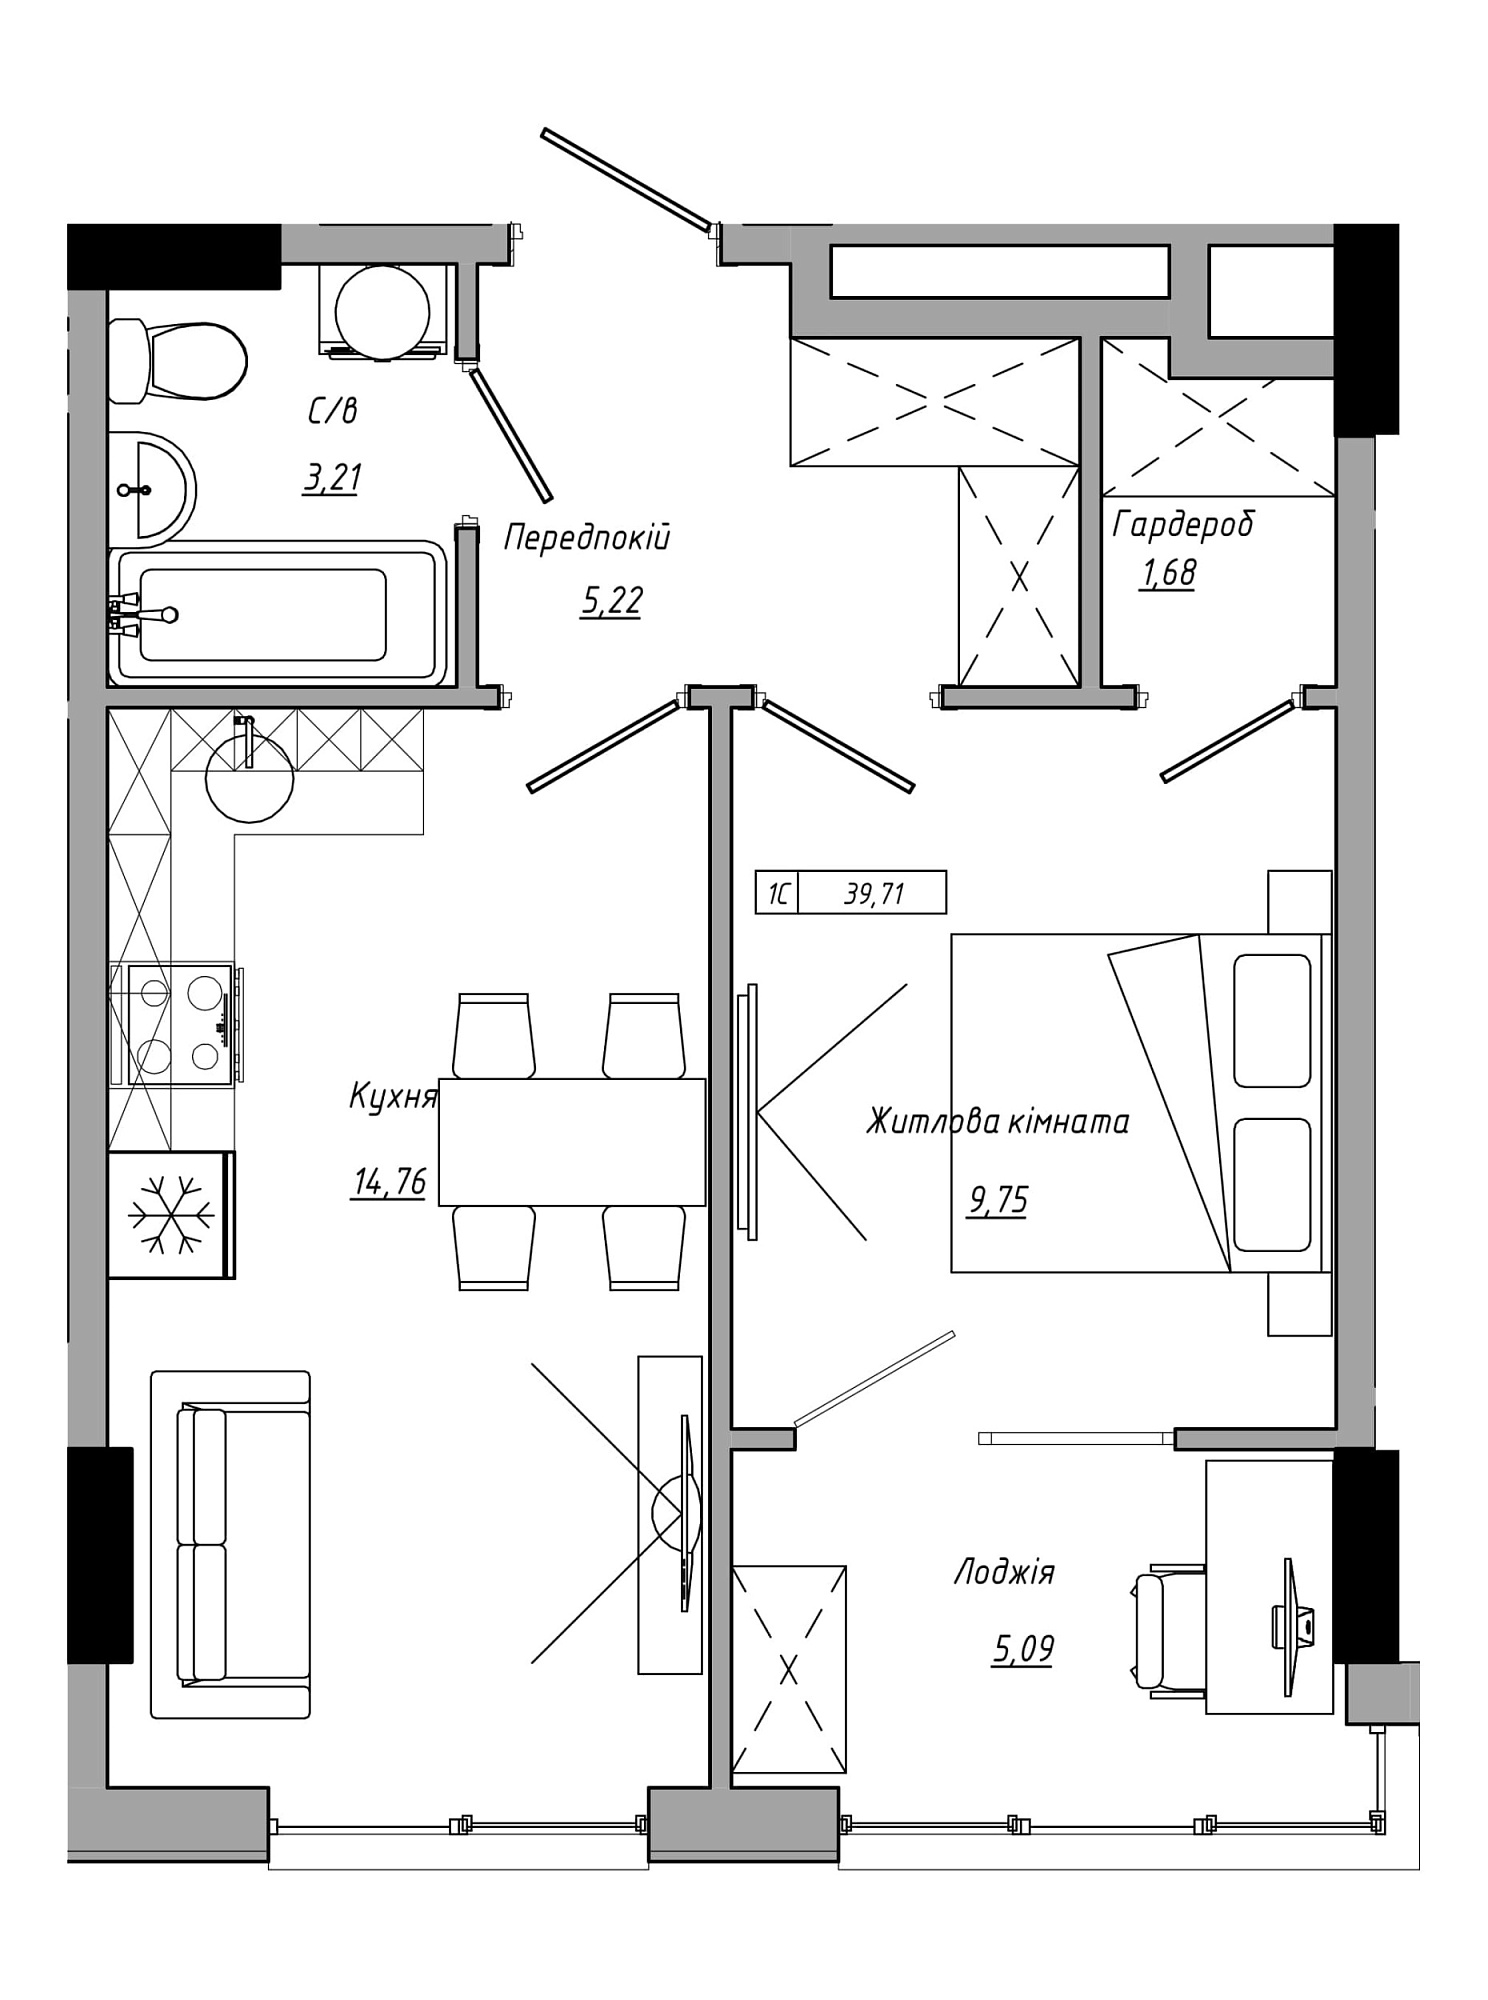 Планування 1-к квартира площею 39.71м2, AB-21-14/00121.